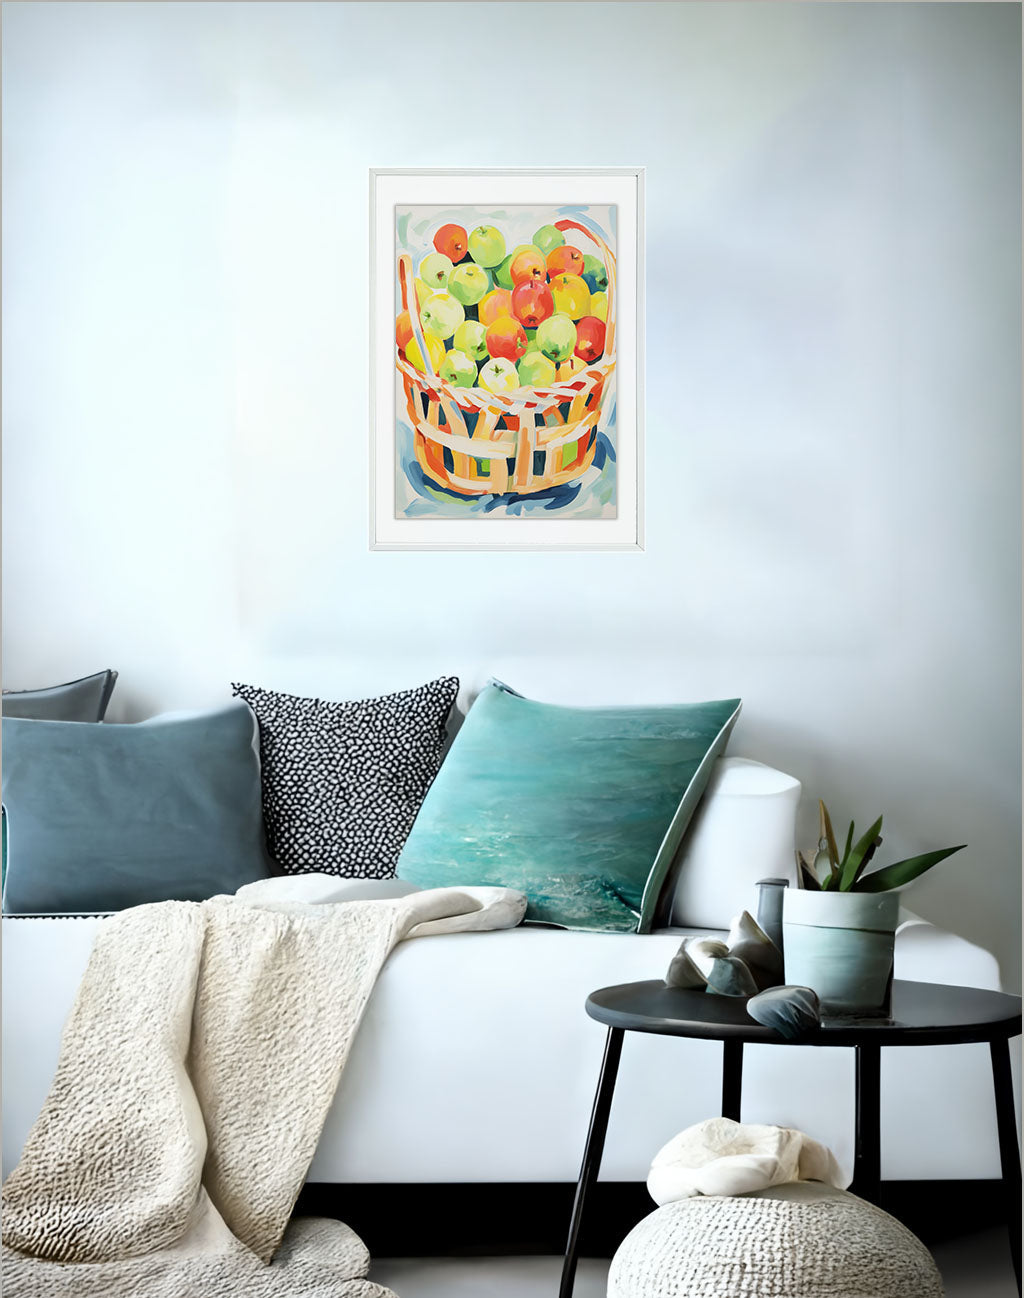 りんごのアートポスター:apple_7e70 / キッチン_フルーツと野菜_のポスター画像ソファ近くに設置したイメージ